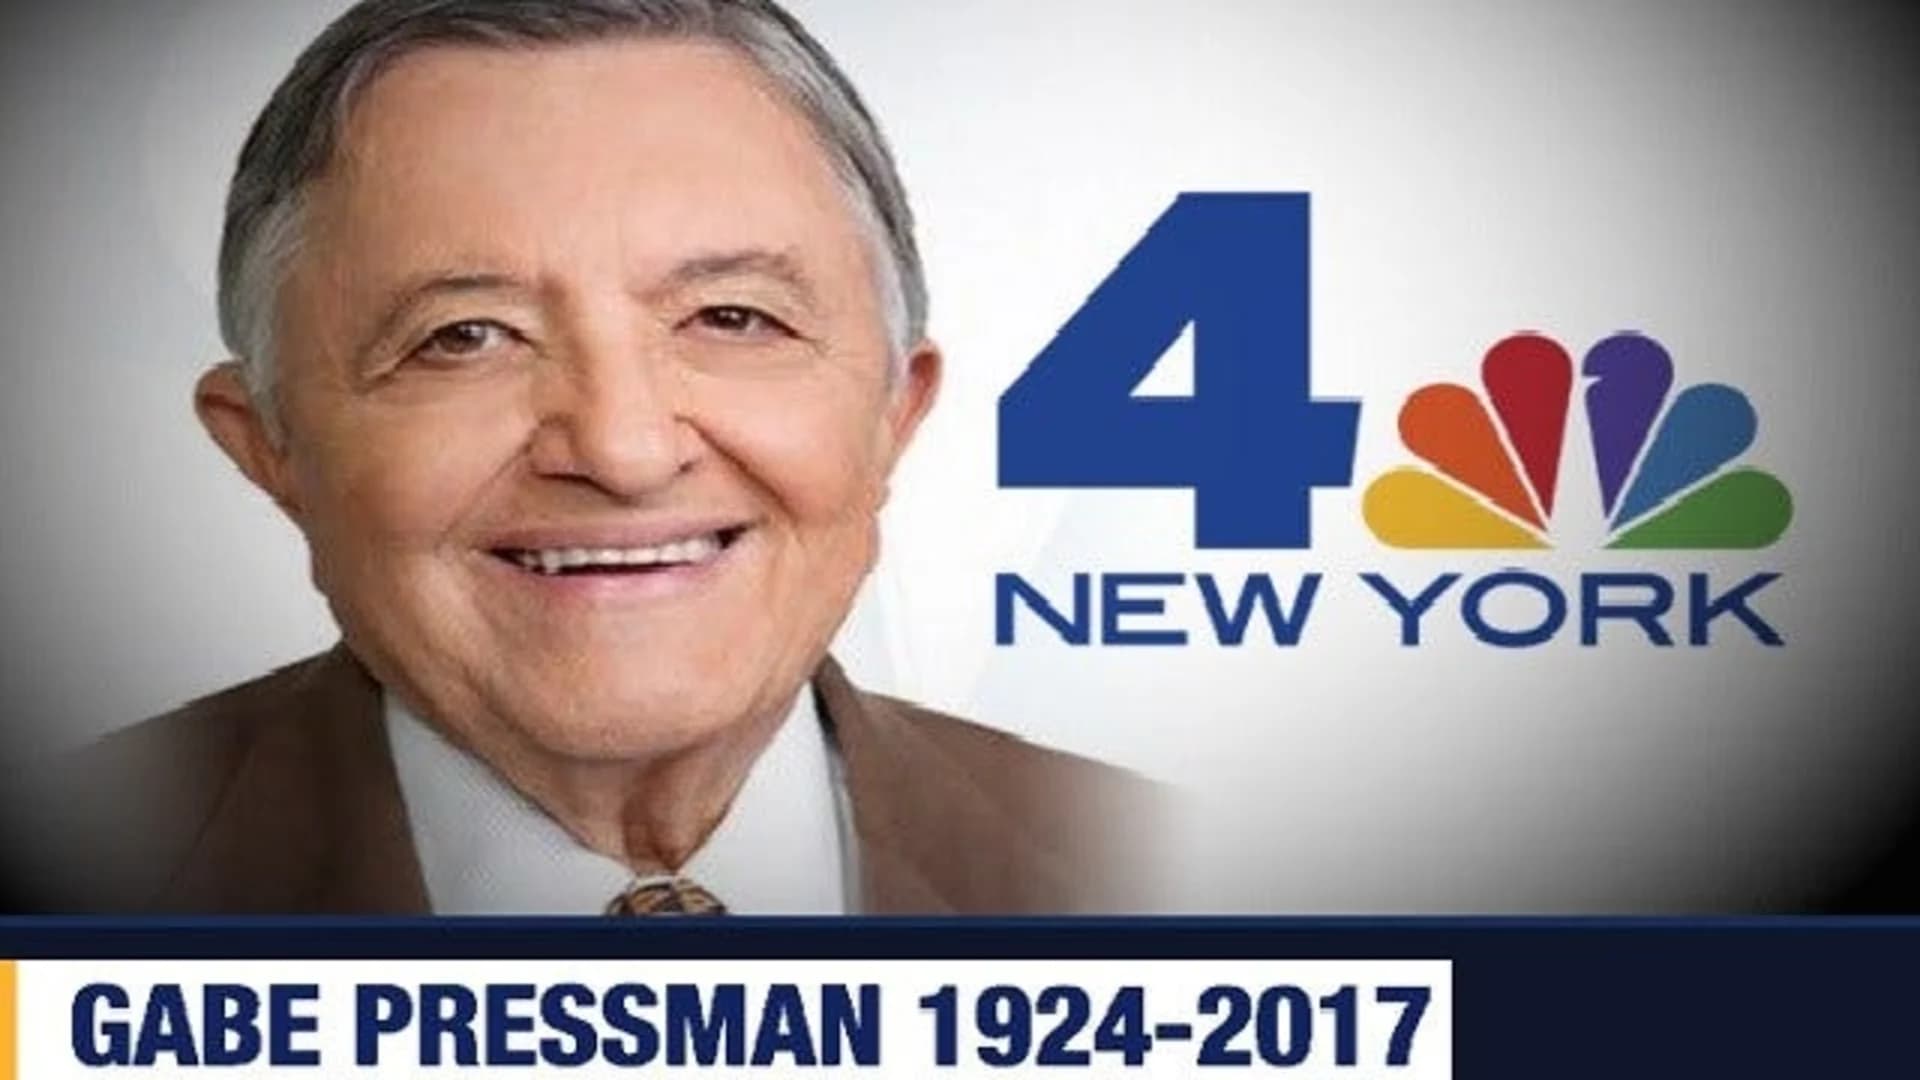 New York journalist Gabe Pressman dies at 93